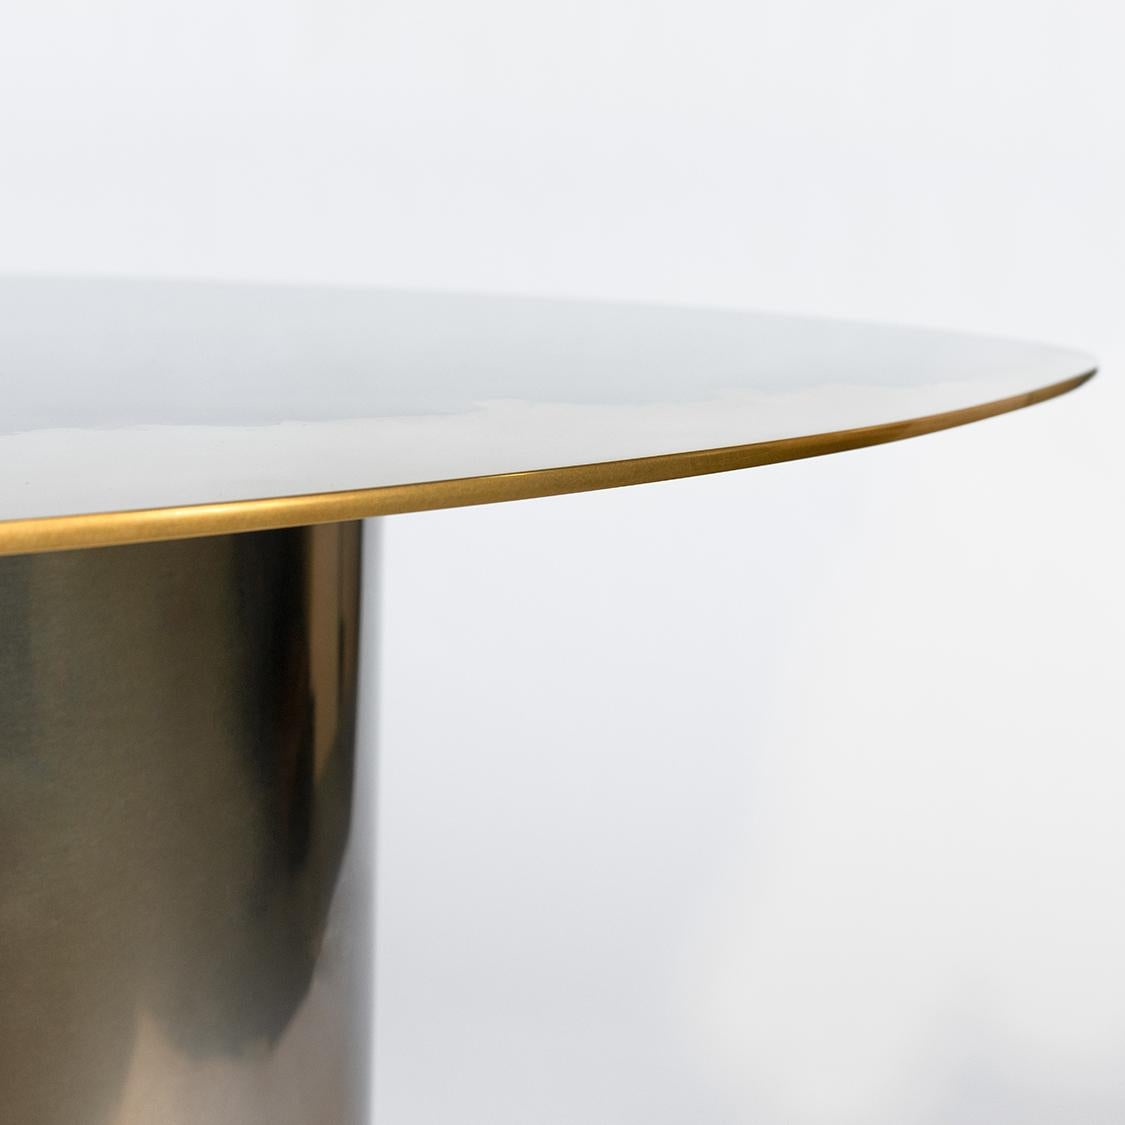 Table d'appoint faisant partie de la collection Transition, présentant un plateau unique et artistique poli miroir, fabriqué en laiton et en acier inoxydable sur une base tubulaire. Mesures : H 22